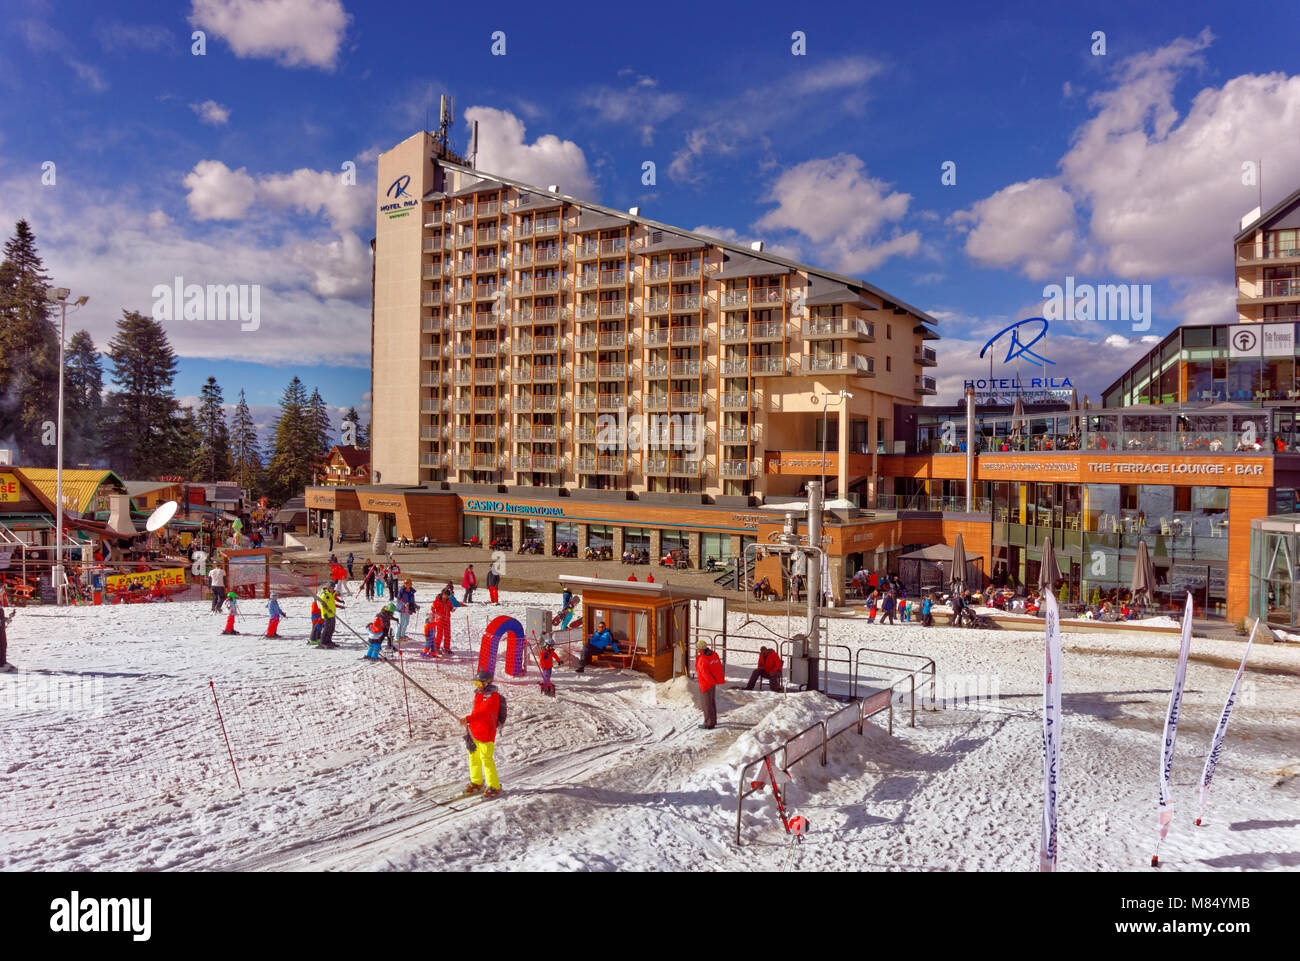 Rila Hotel and beginners drag lift at Borovets Ski resort, Targovishte, Bulgaria. Stock Photo